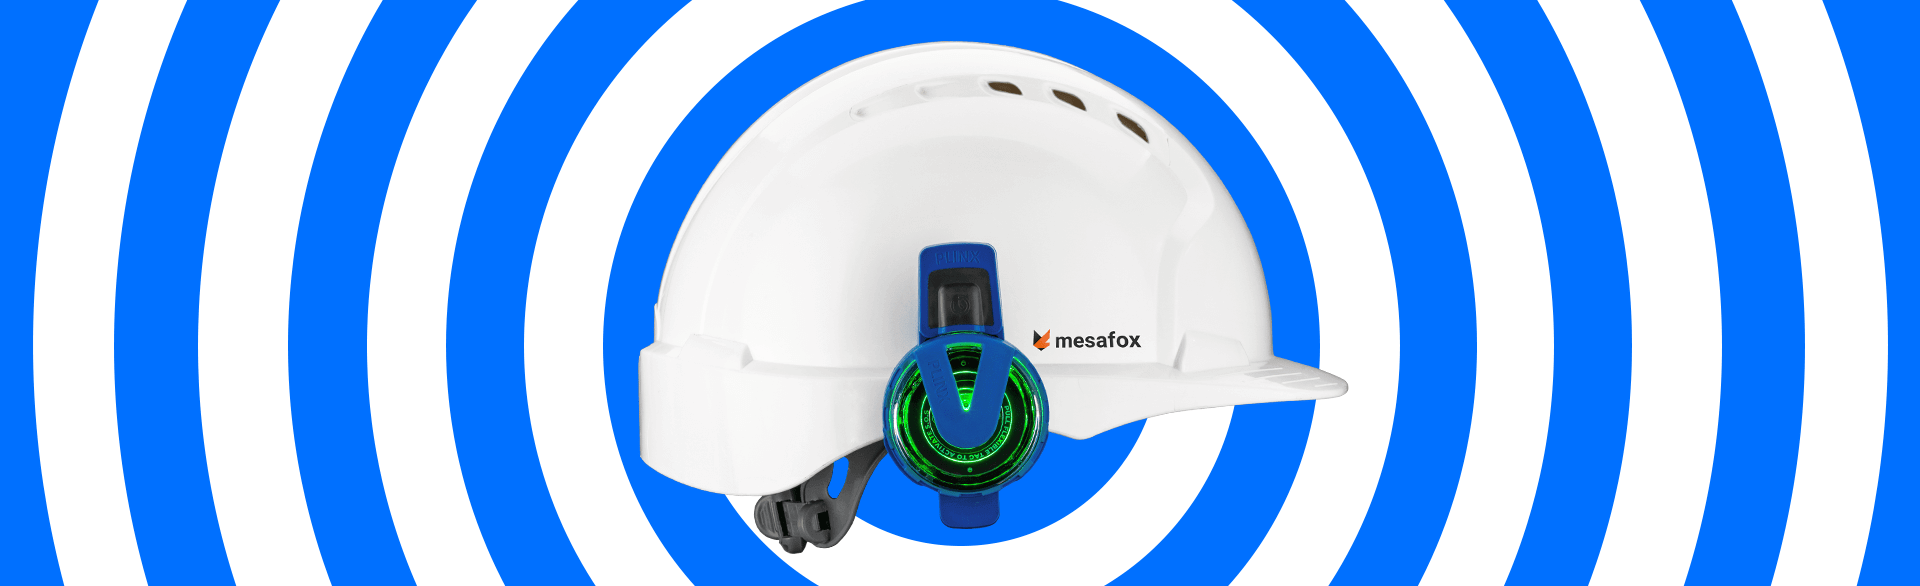 Smarte innovative Sicherheitstechnik. mesafox PLINX smarte Sensoren für die Baustelle.